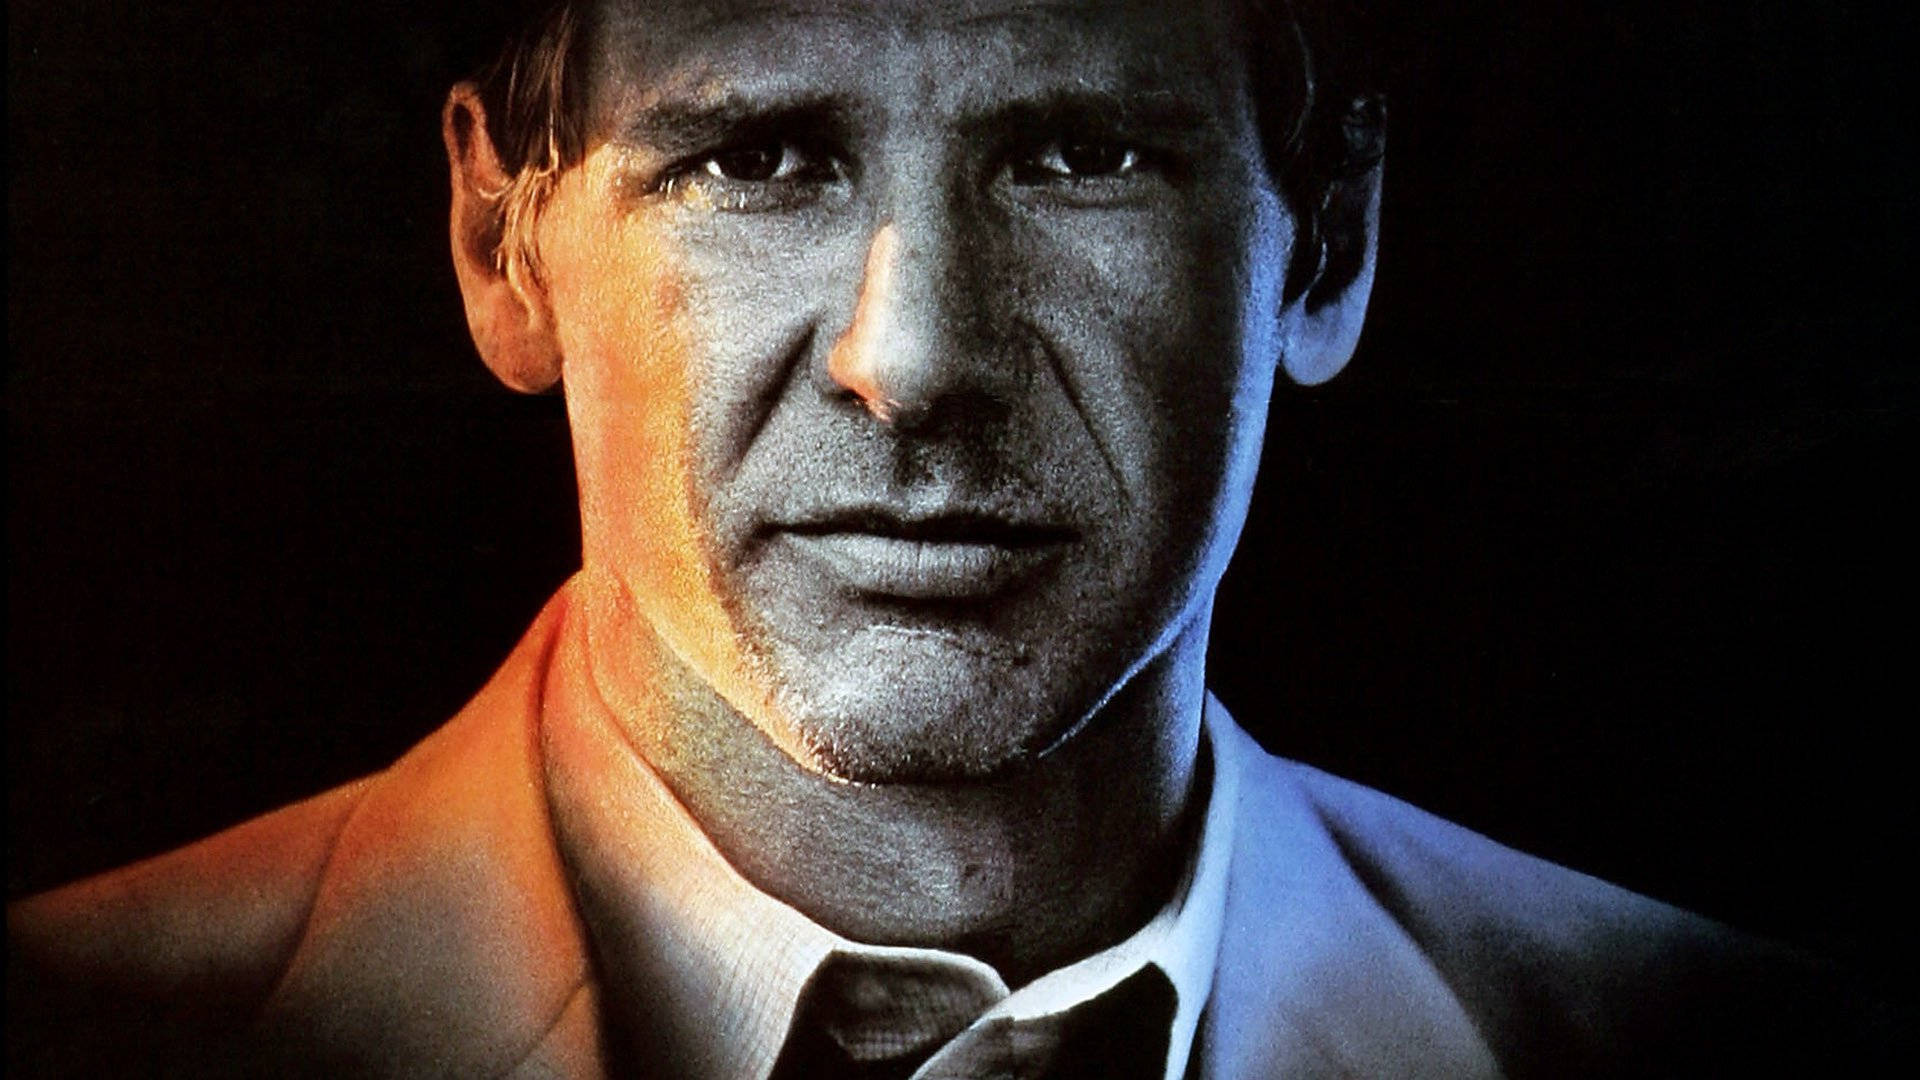 Harrison Ford 1985 Witness Poster Wallpaper